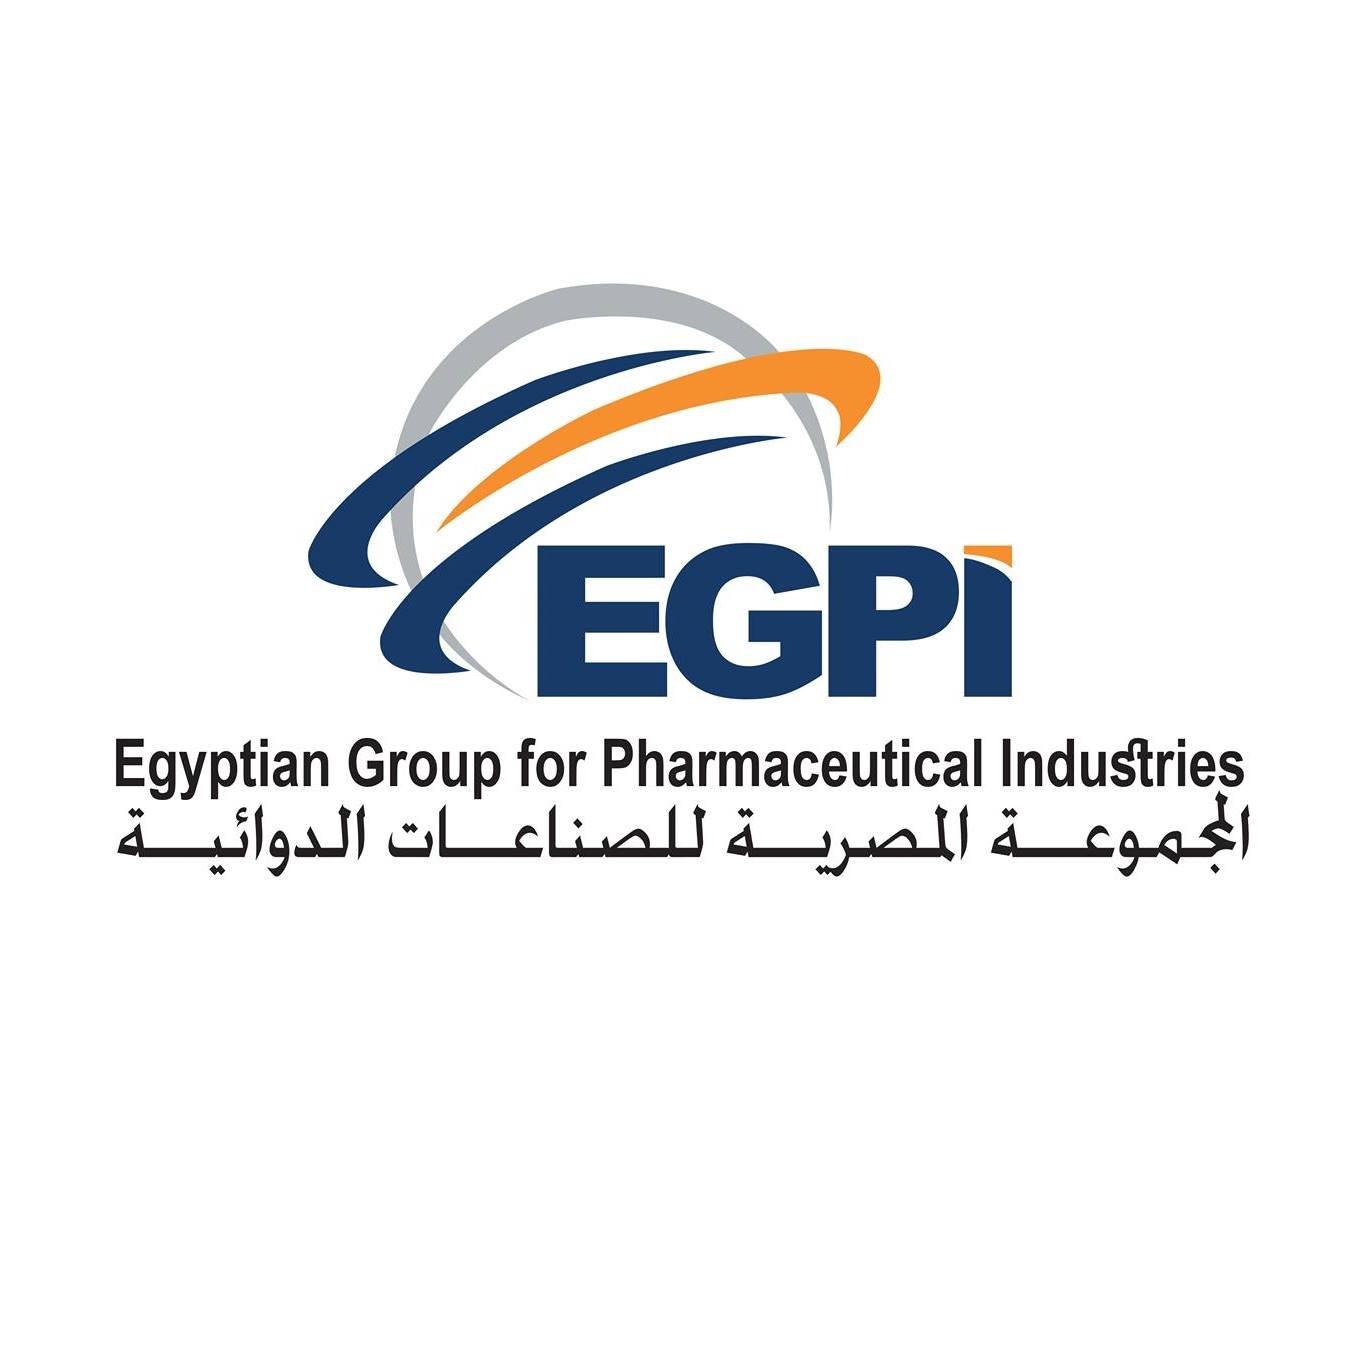 Egyptian Group for Pharmaceutical Industries “EGPI”